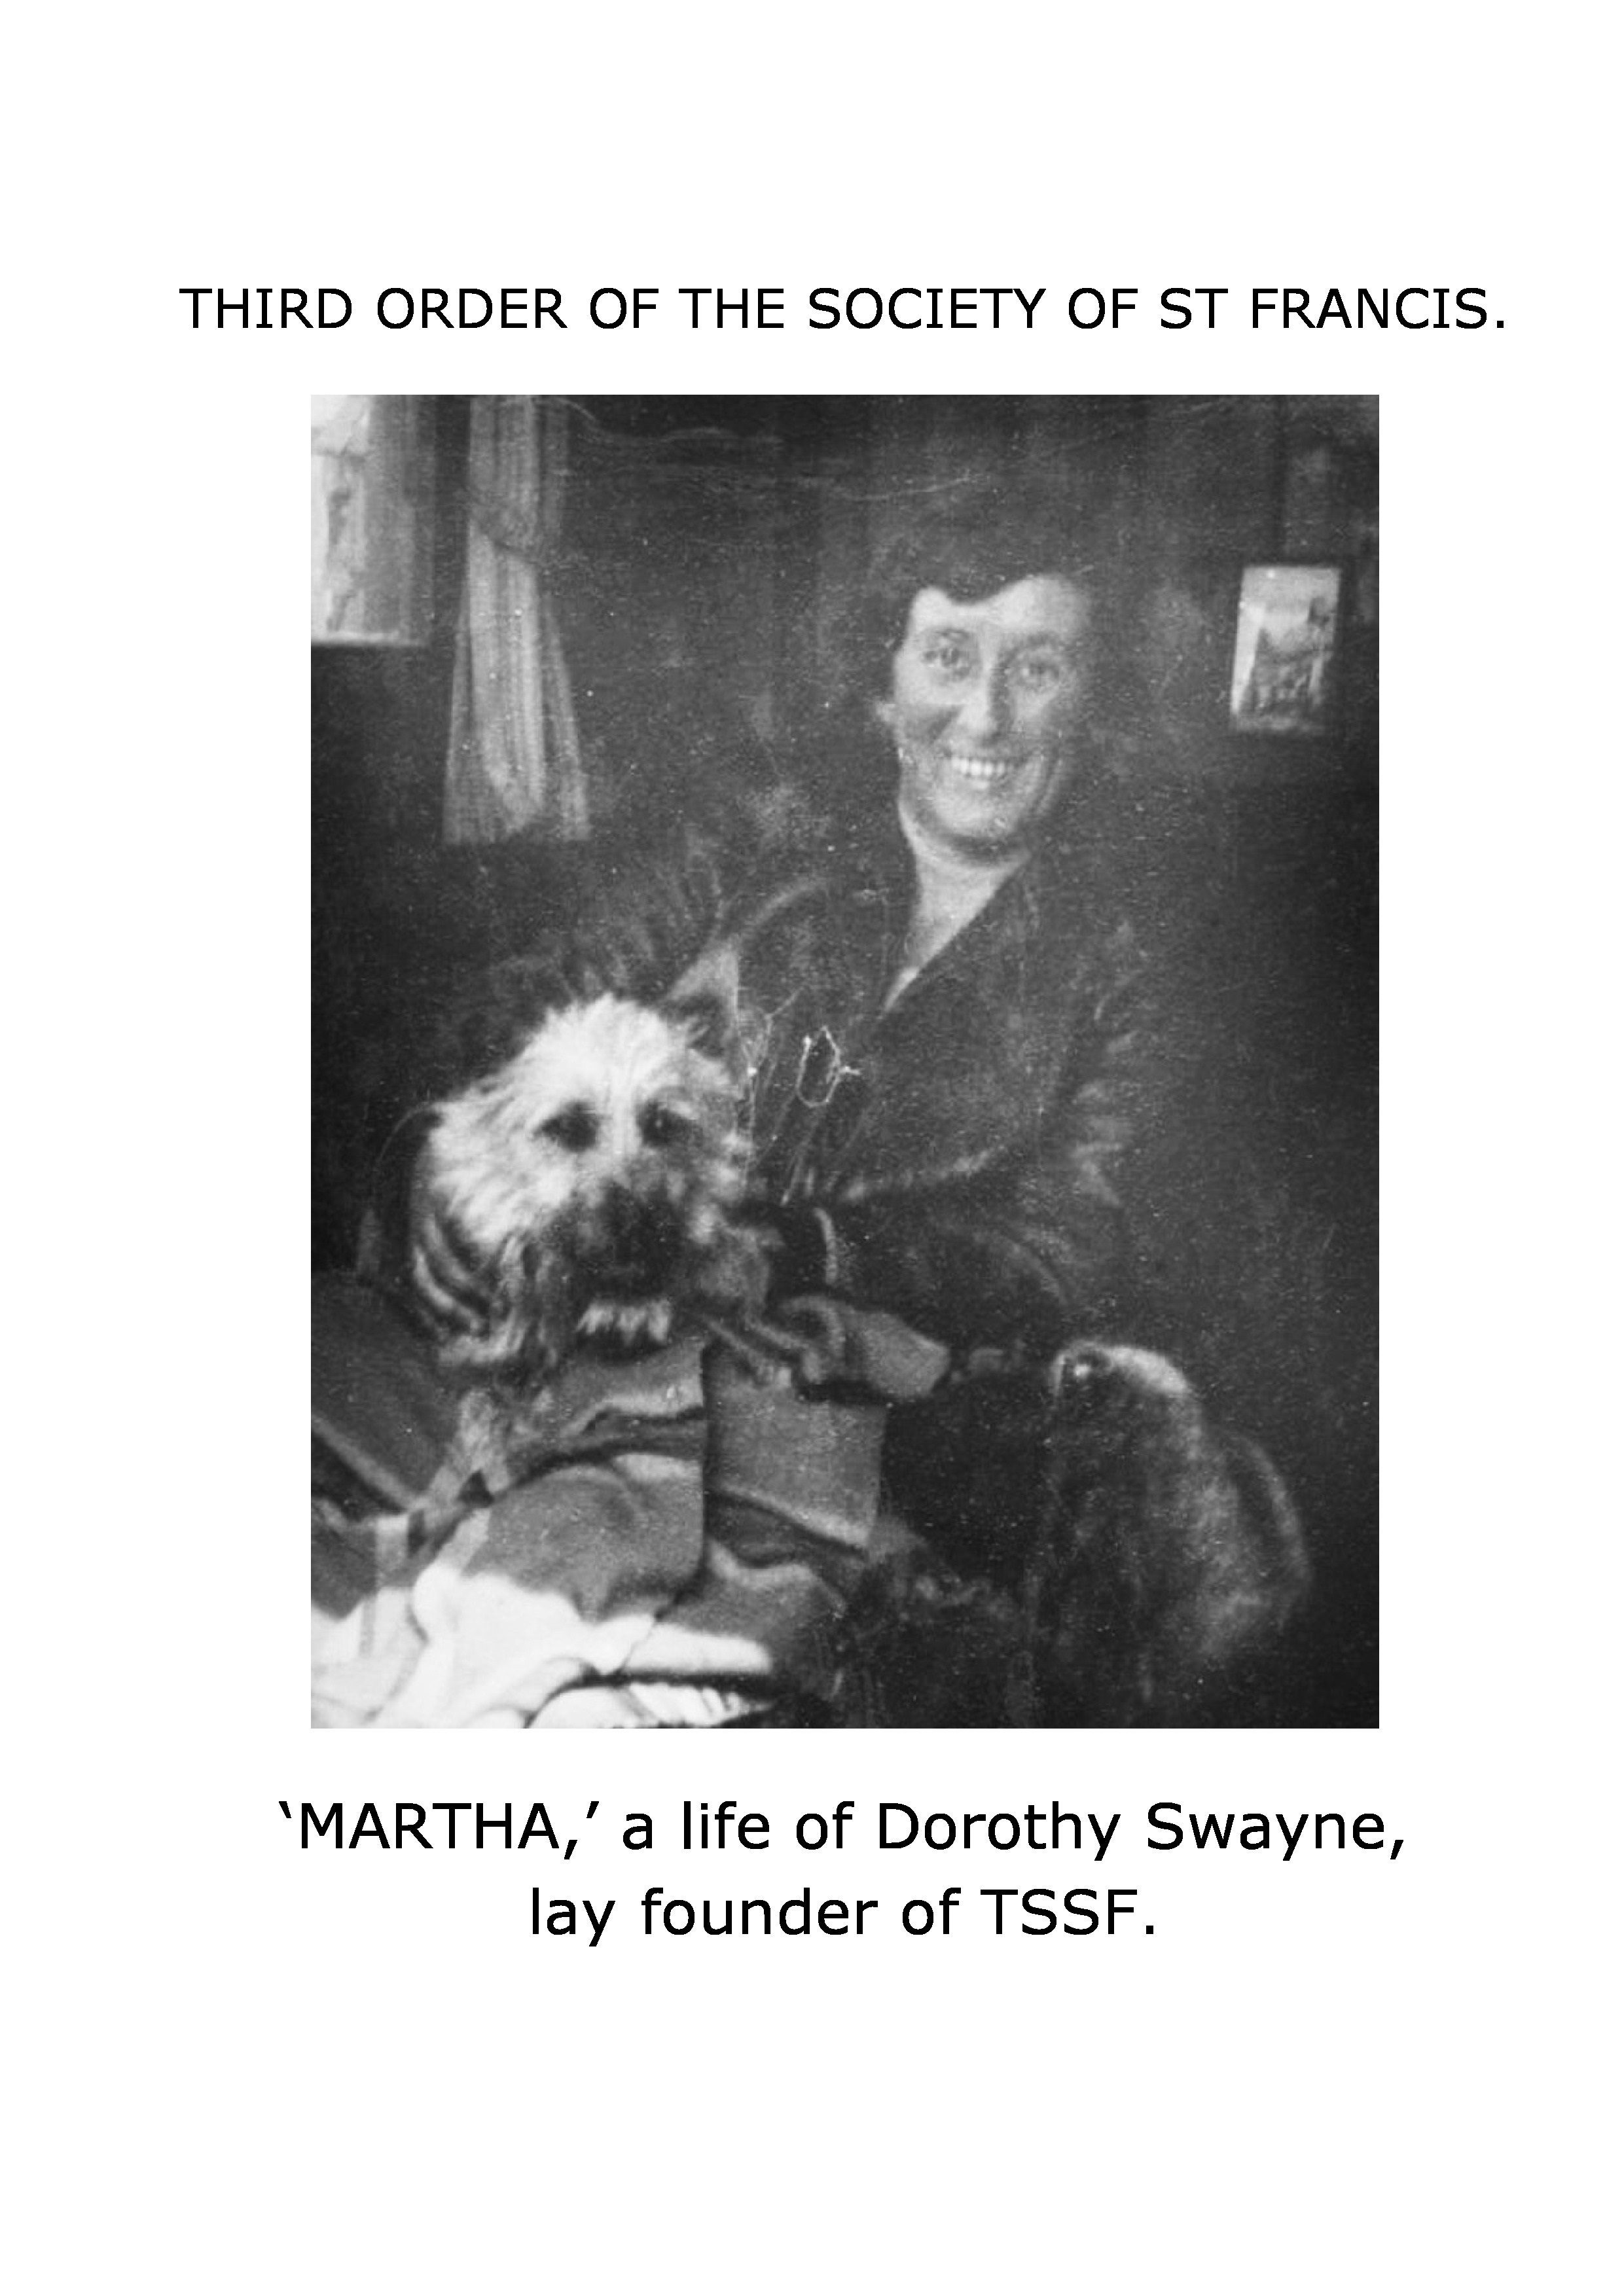 Dorothy SWAYNE